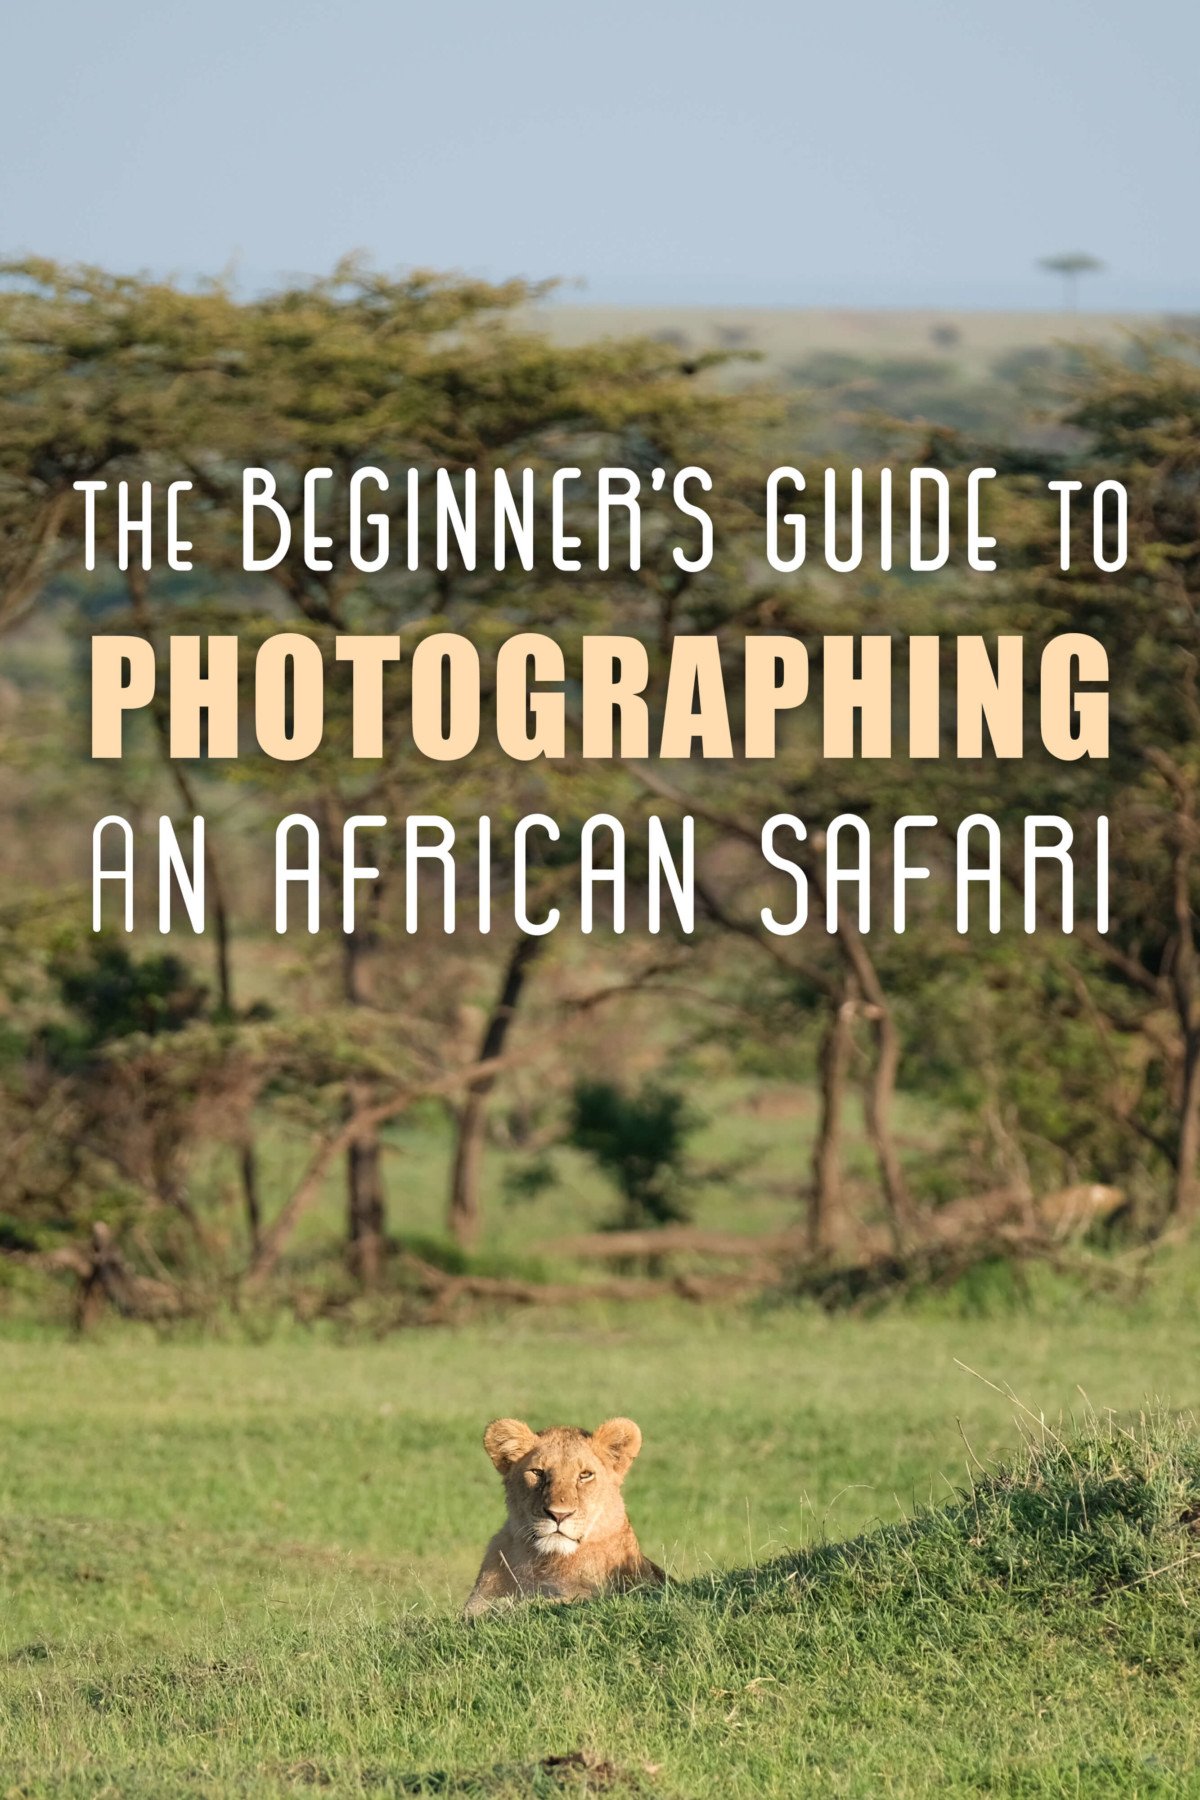 photo safari meaning in english